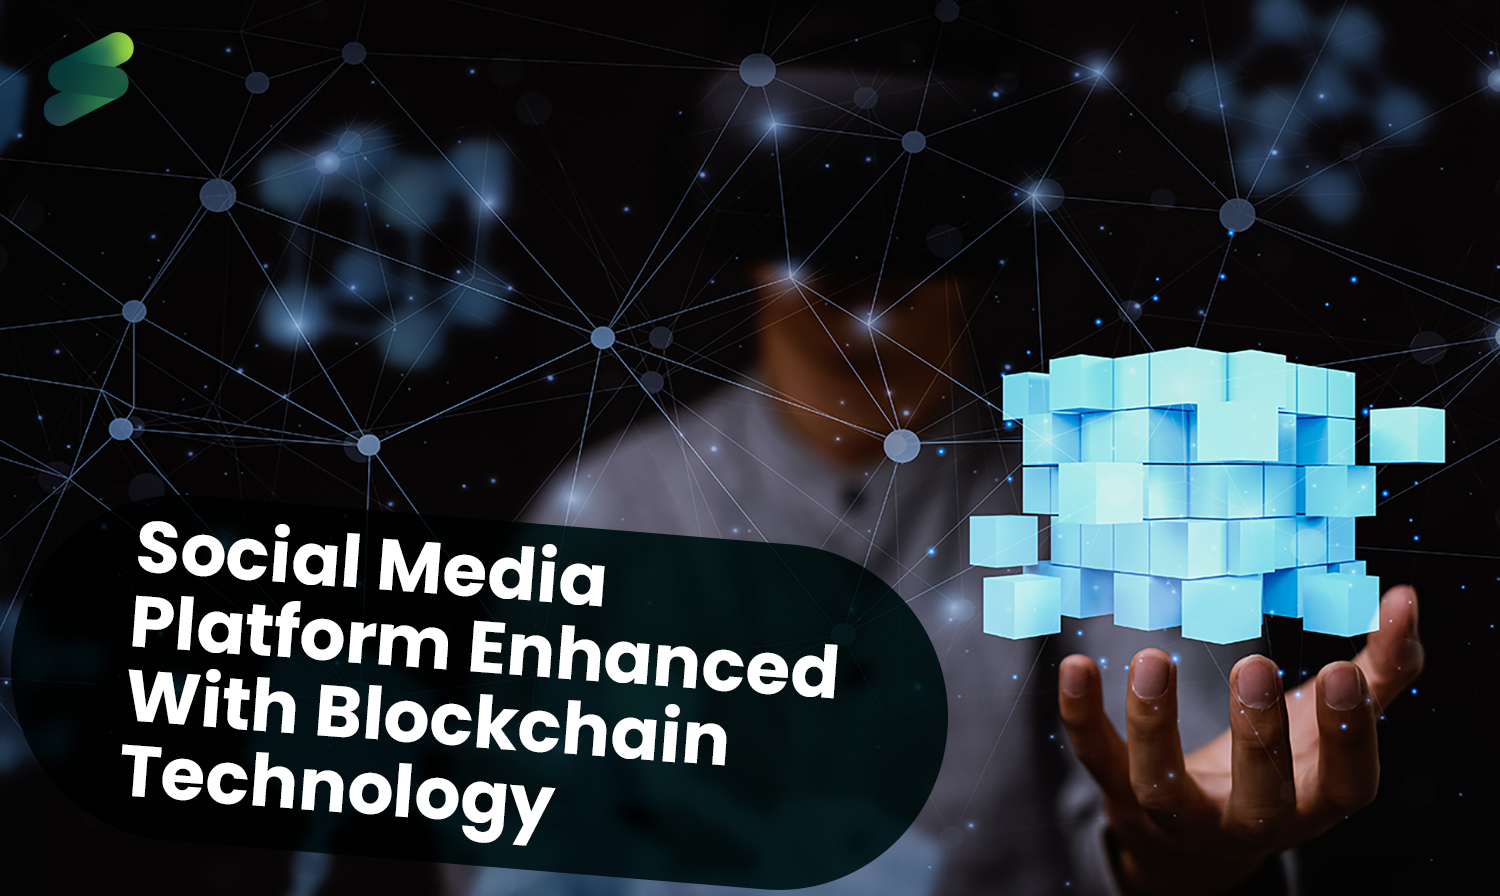 blockchain based social media platform